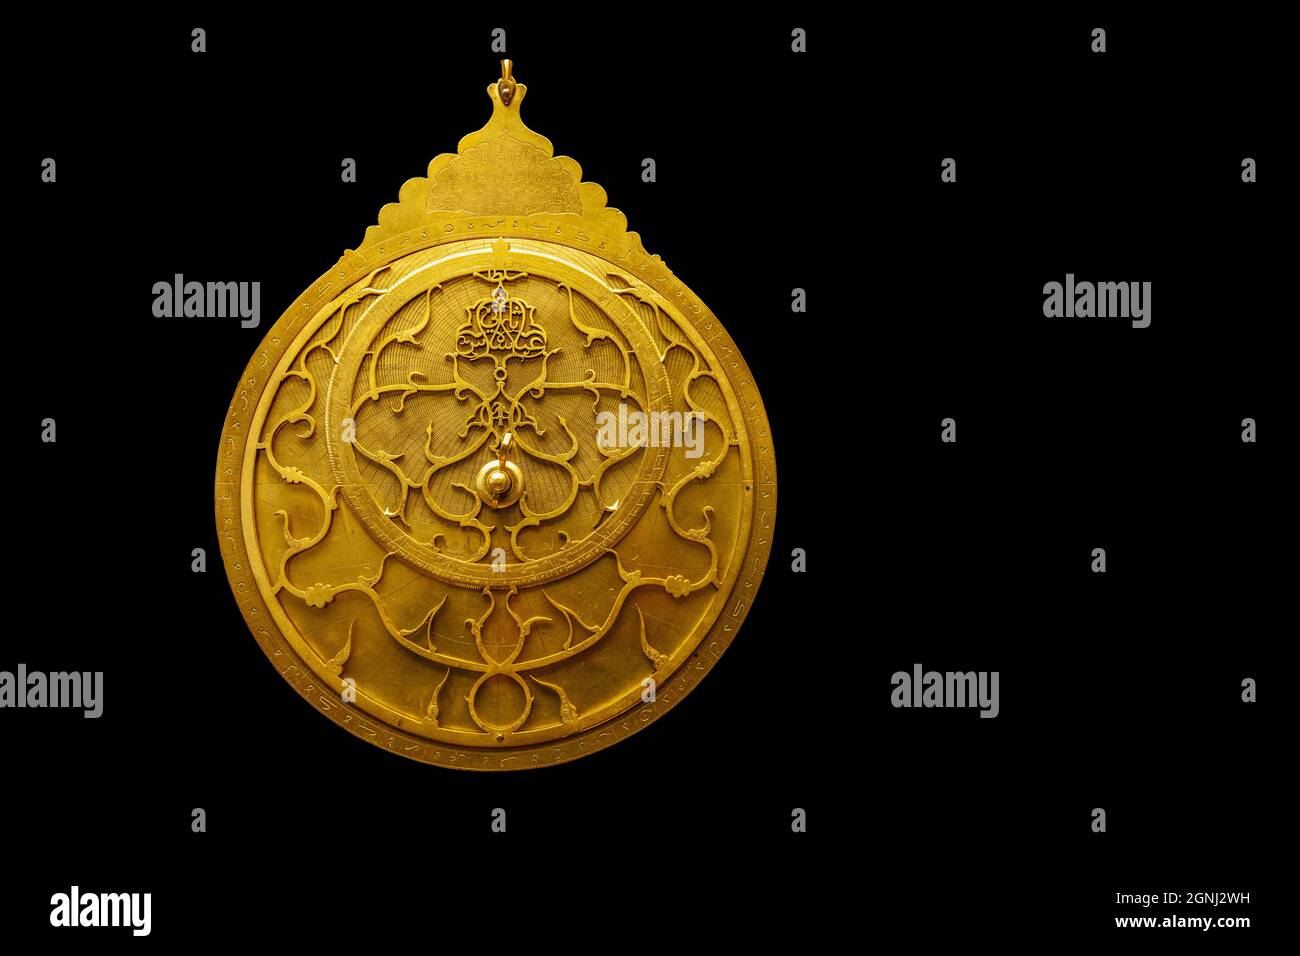 Astrolabe, un instrument utilisé pour faire des mesures astronomiques, typiquement des altitudes des corps célestes, et dans la navigation pour calculer la latitude Banque D'Images